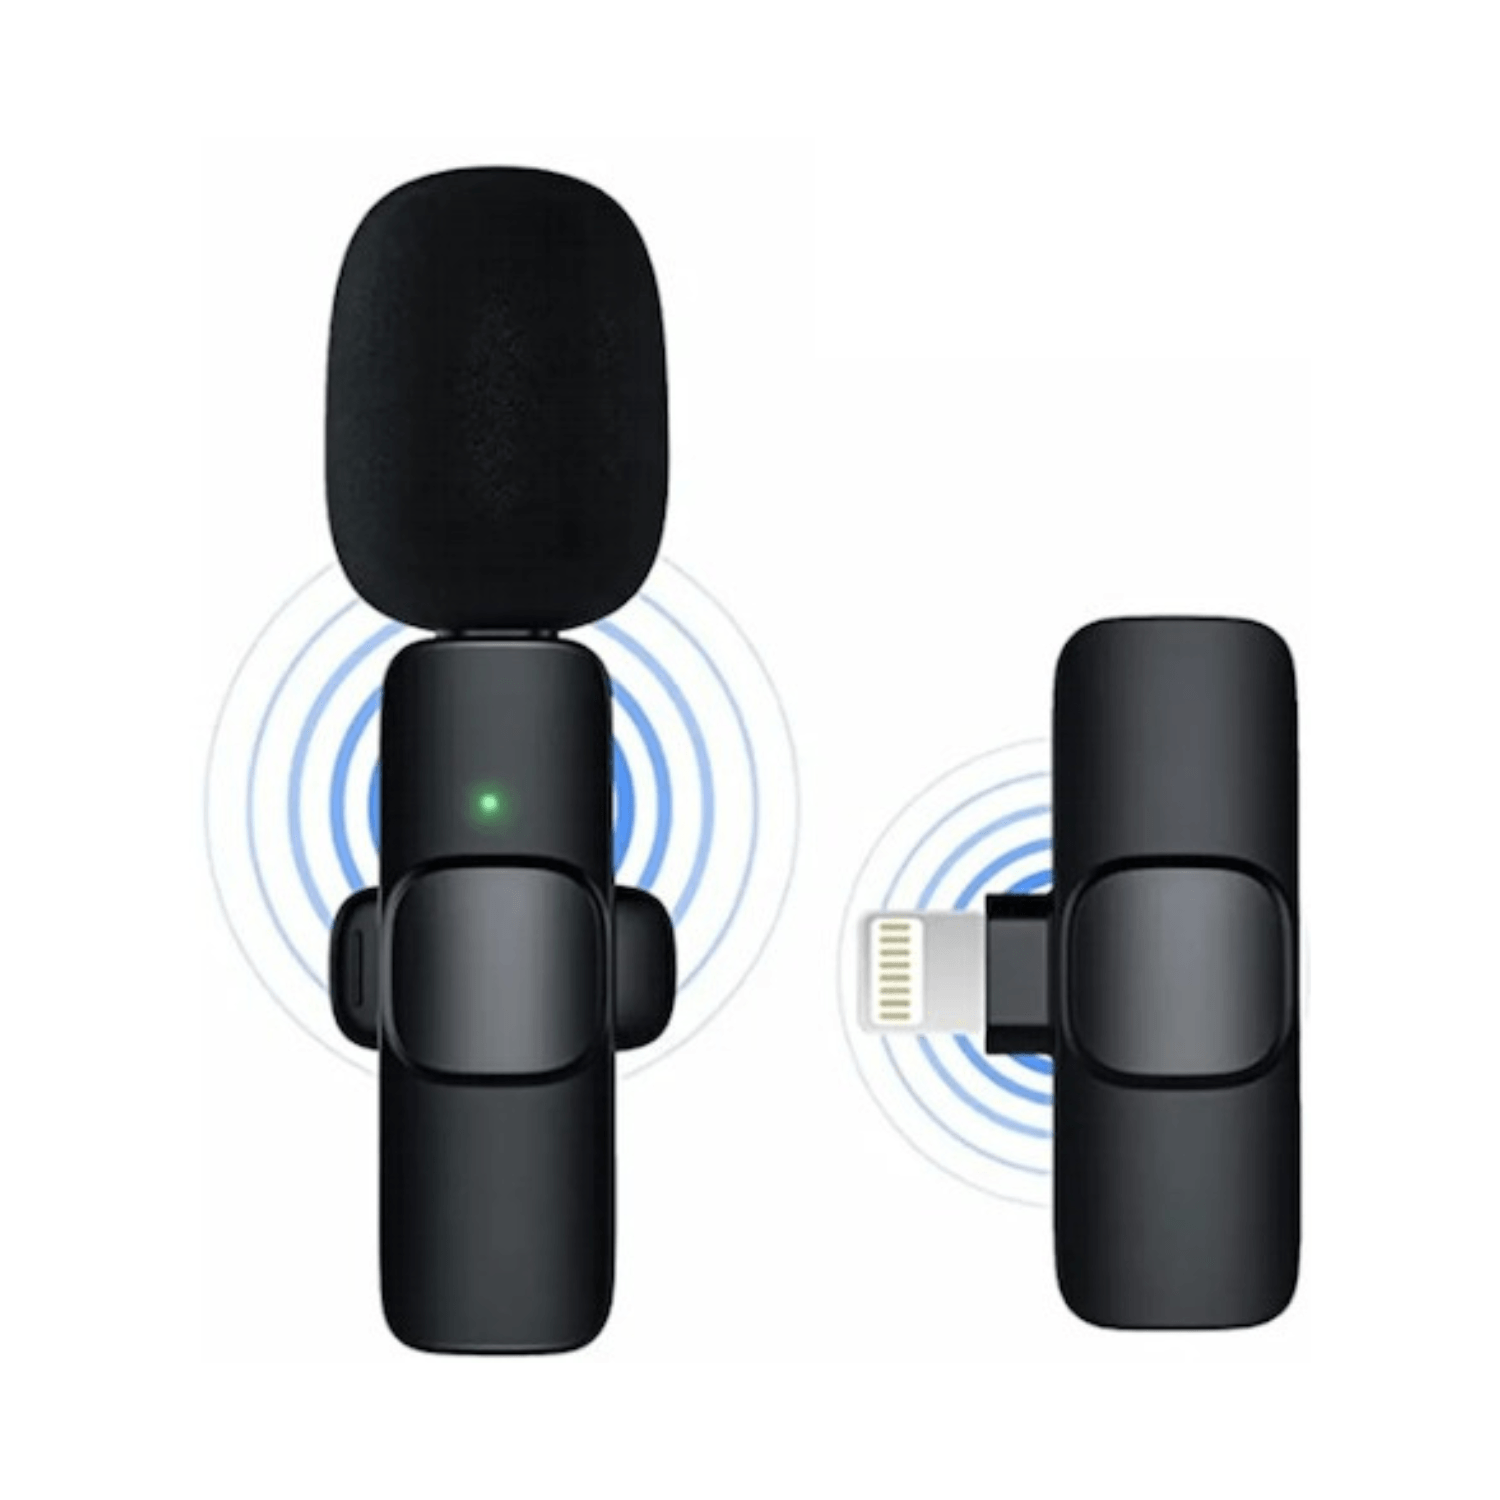 Micrófono inalámbrico K9 compatible con iPhone